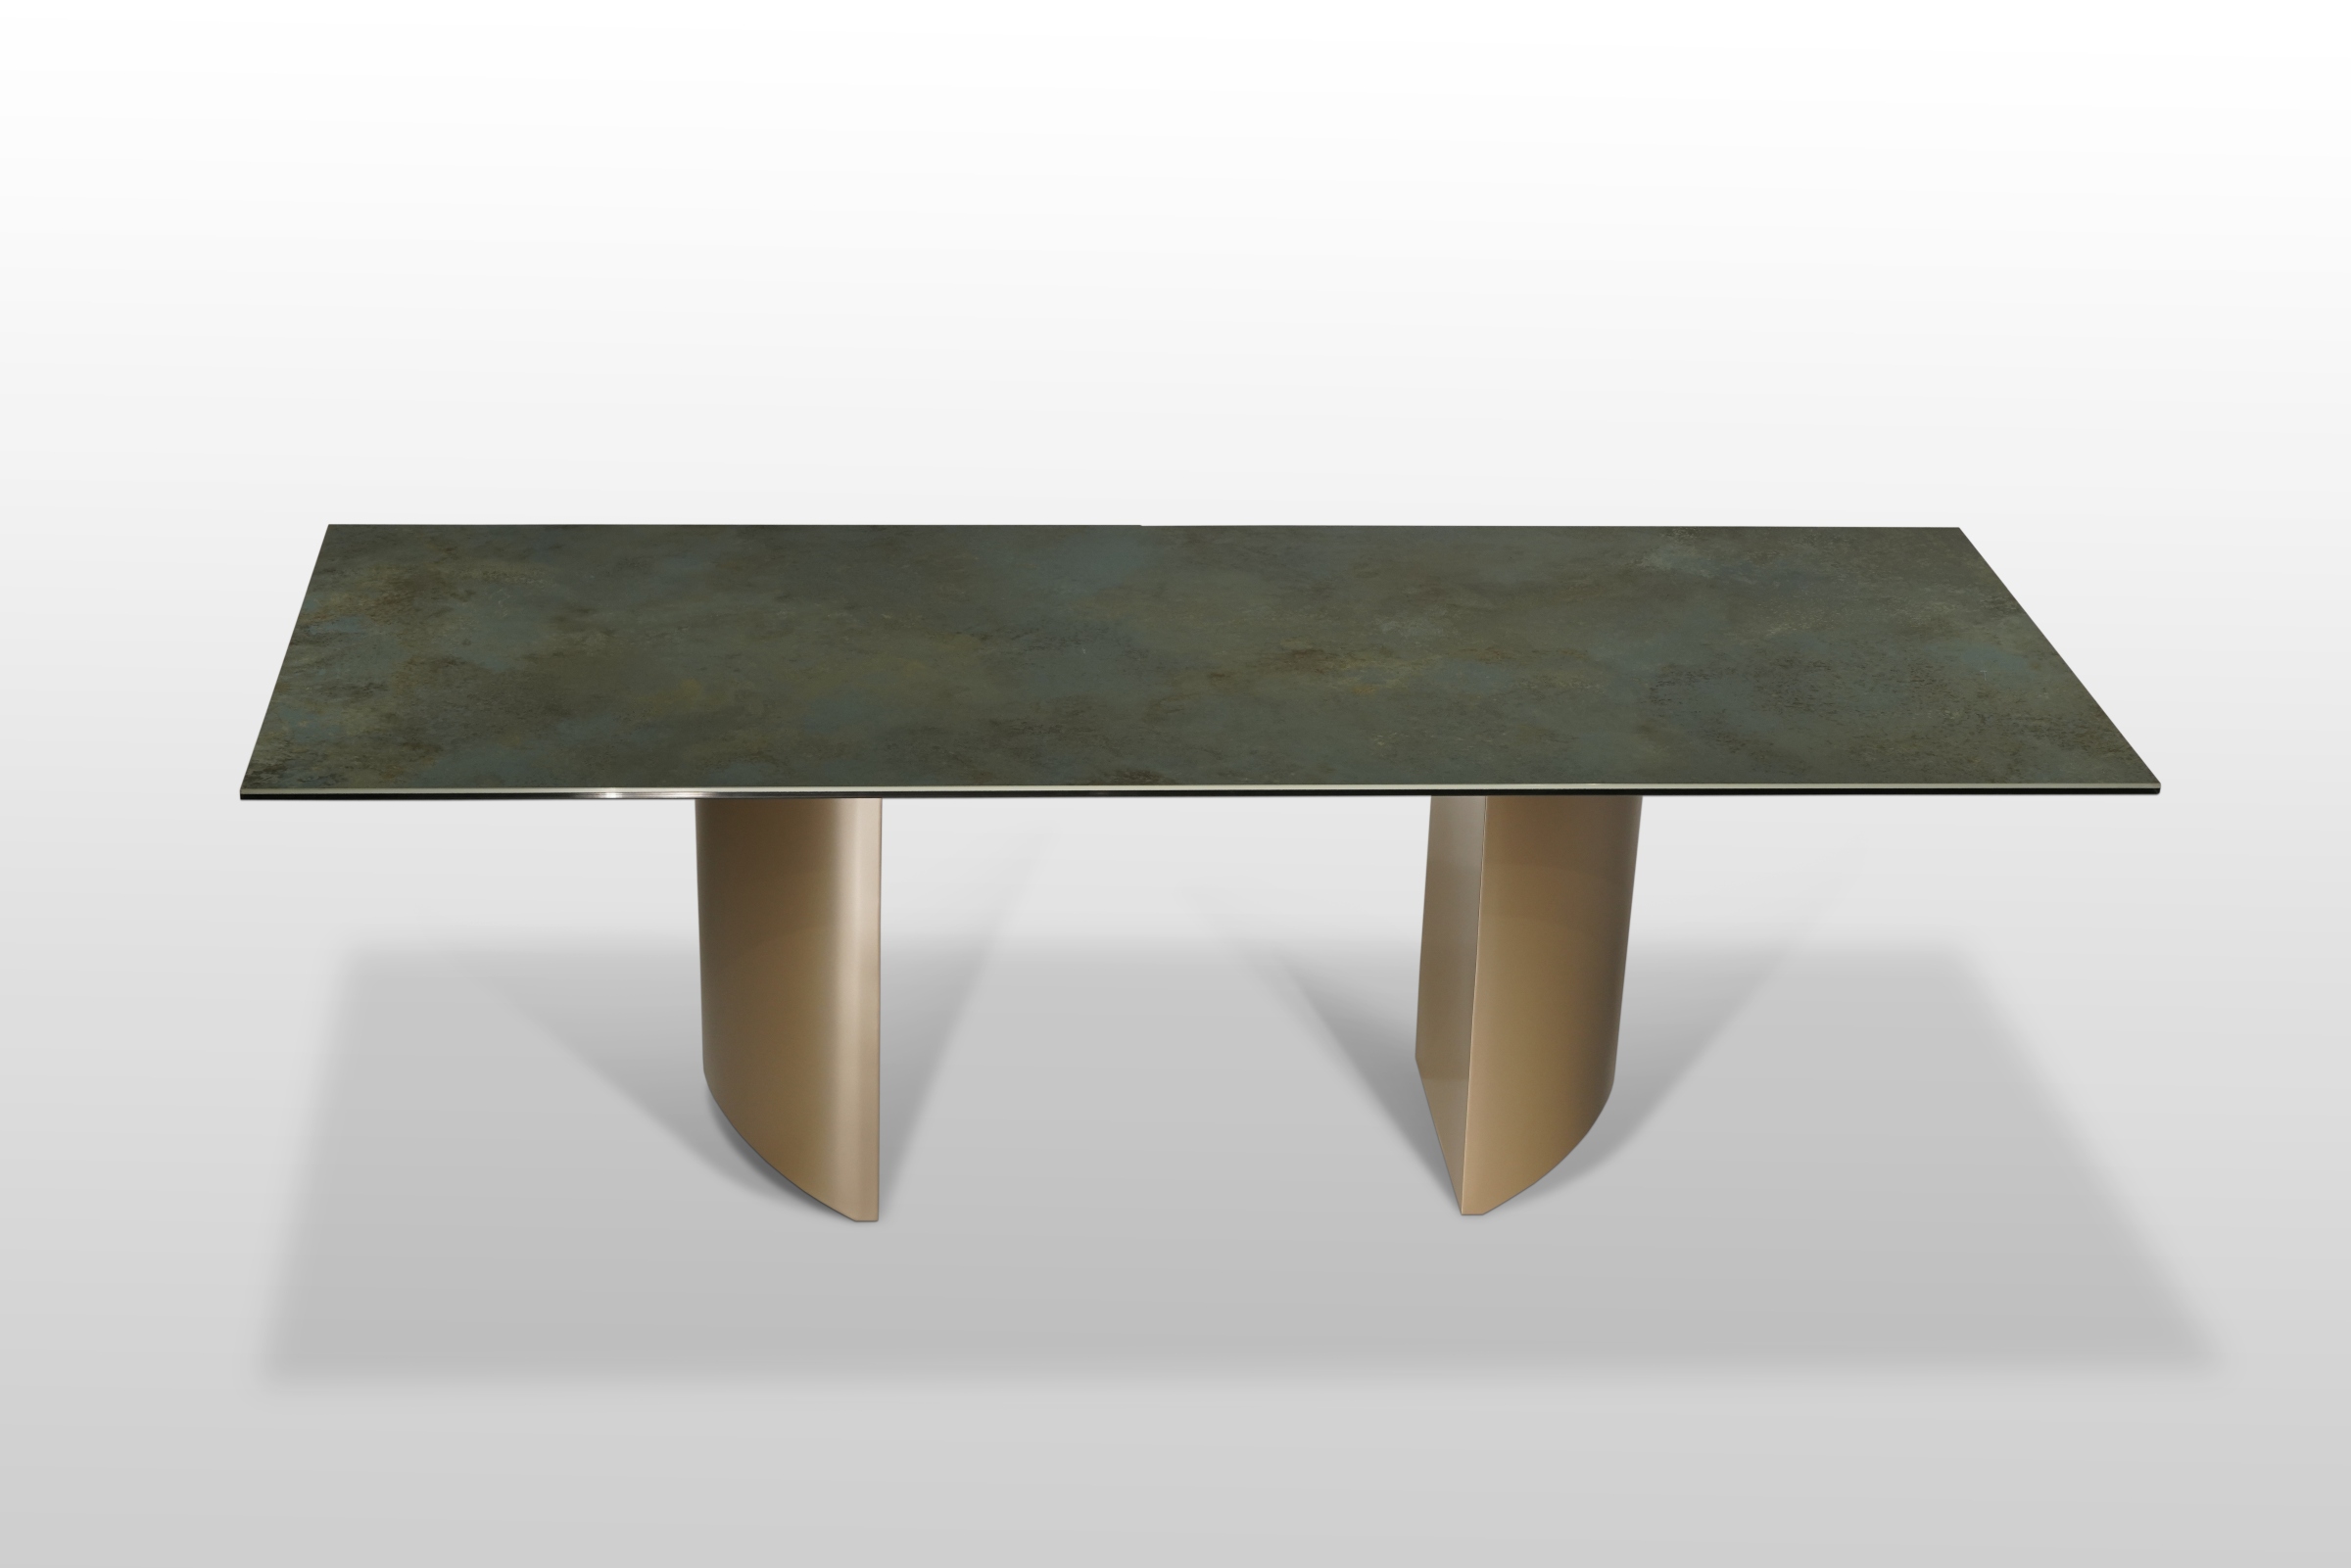 Stół nierozkładany na brązowych kolumnach z blatem w odcienu zieleni z imitacja rdzy